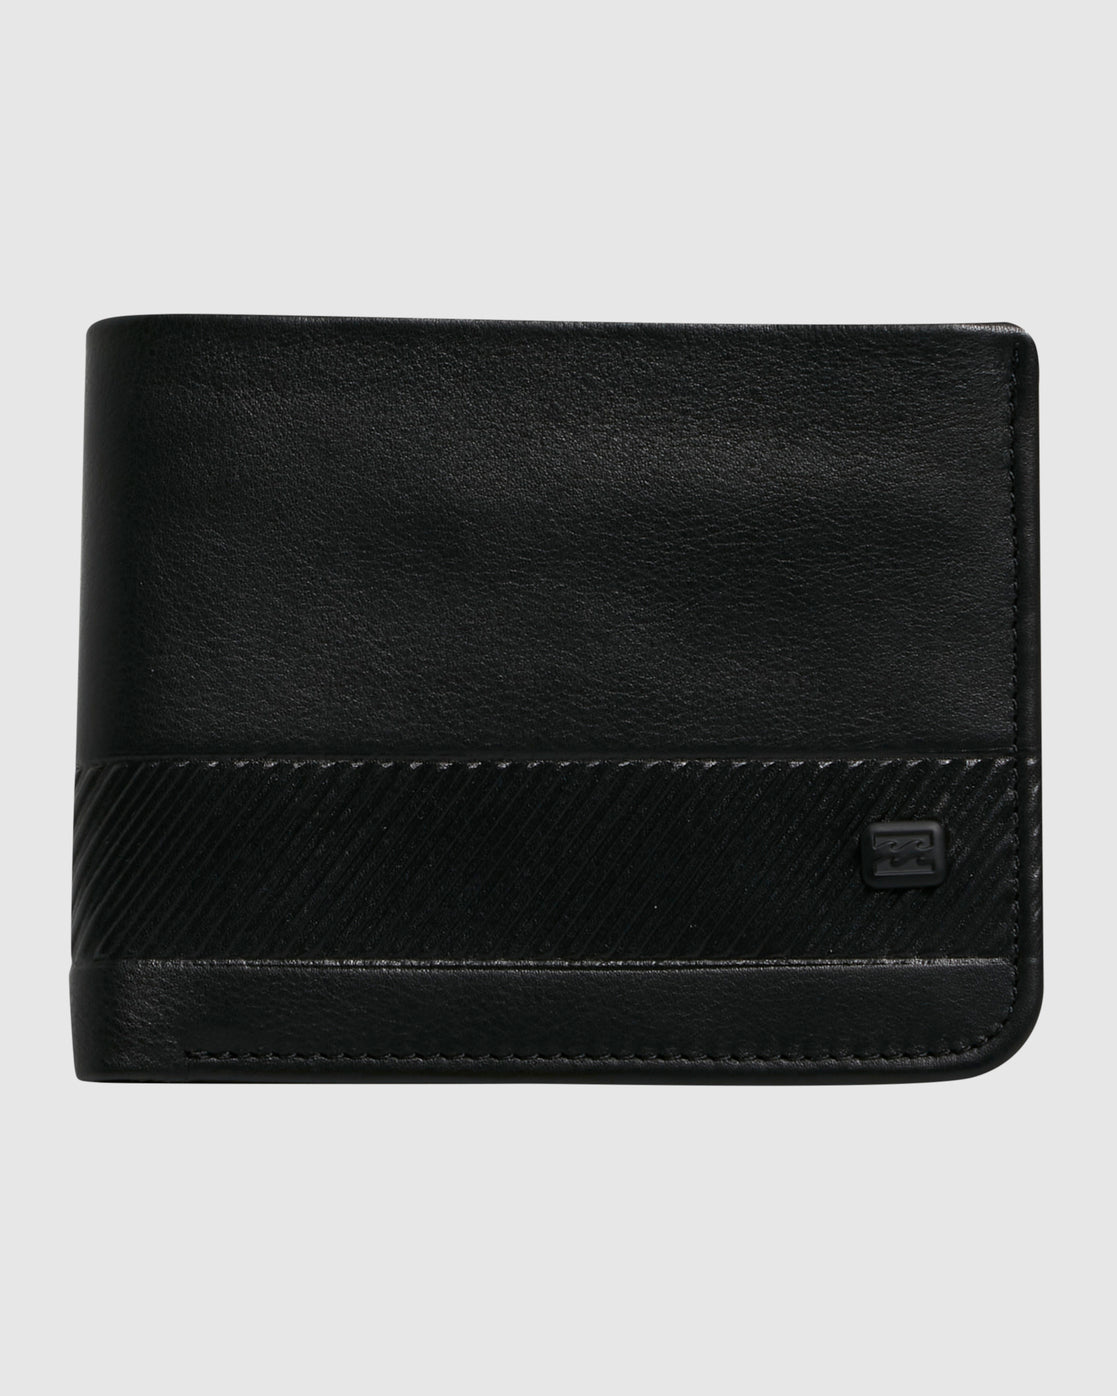 Secret Pocket - Bi-Fold Leather Wallet for Men